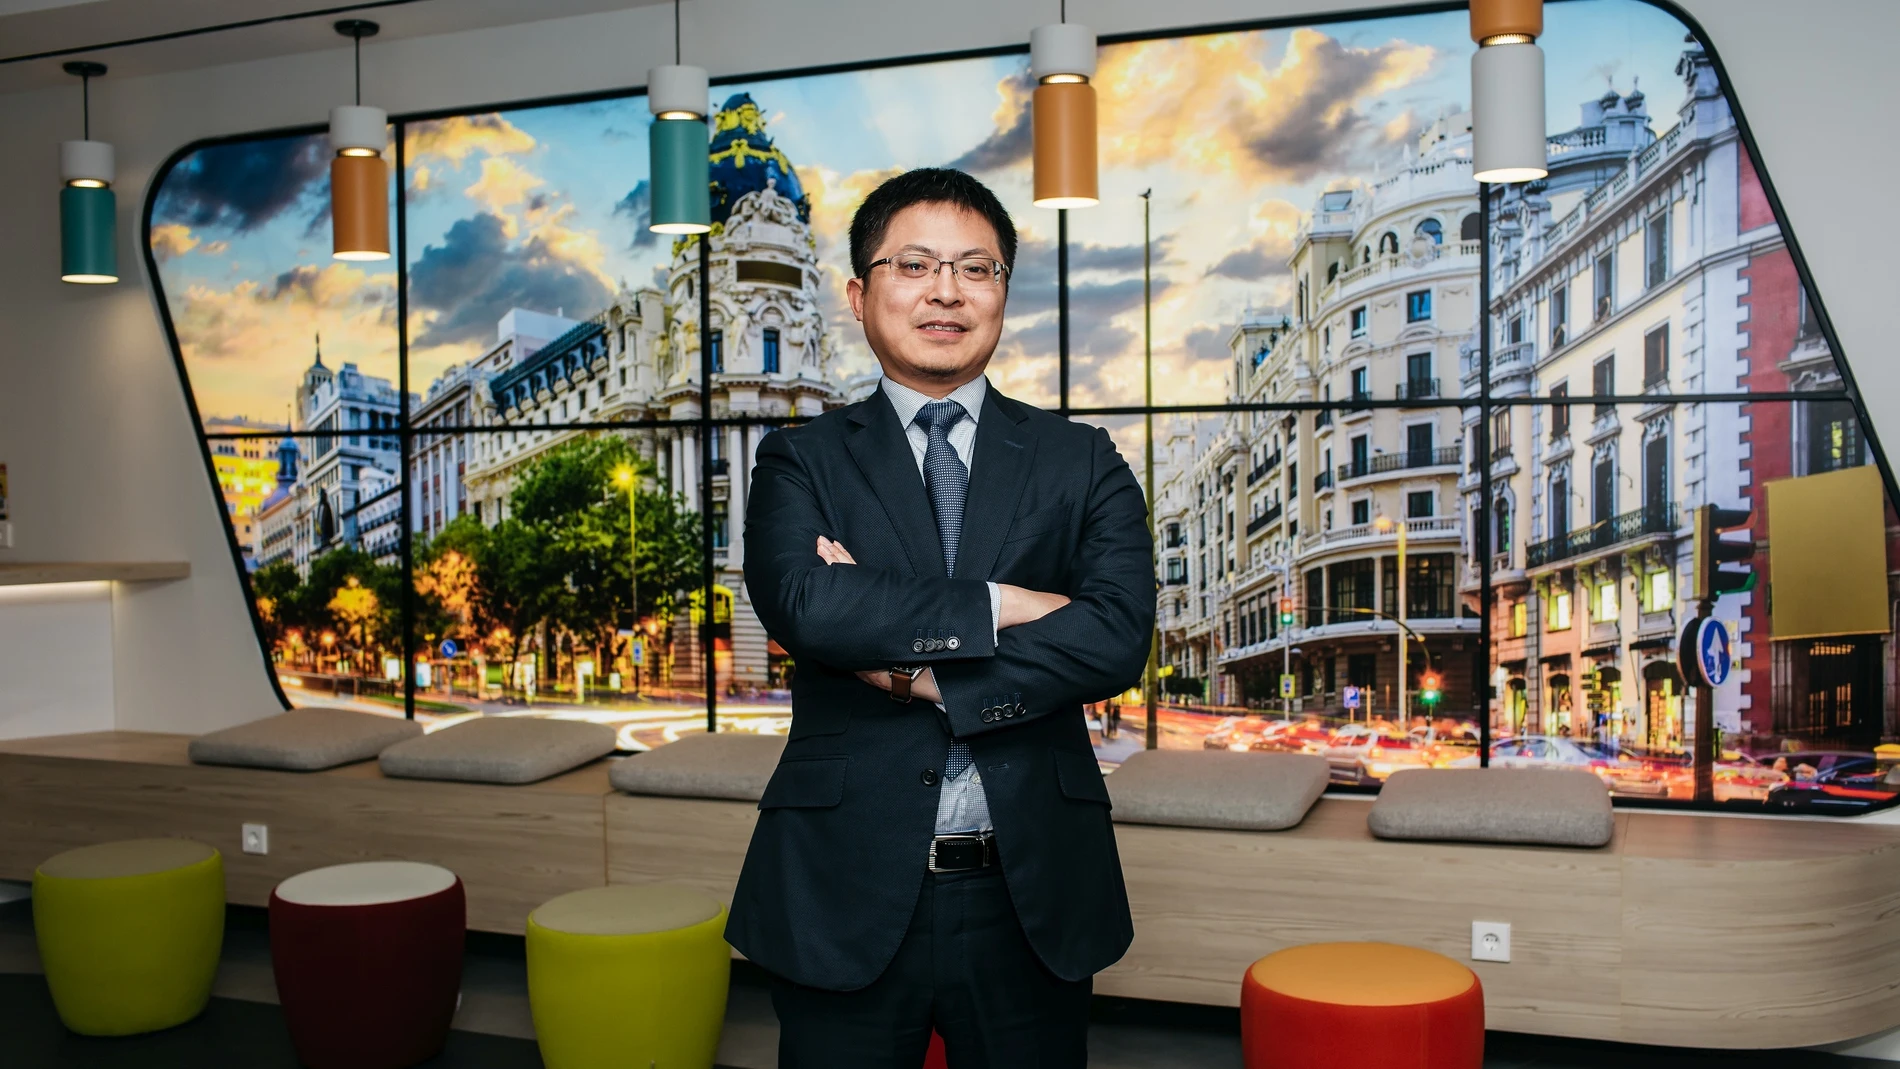 Tony Jin Yong, CEO de Huawei España